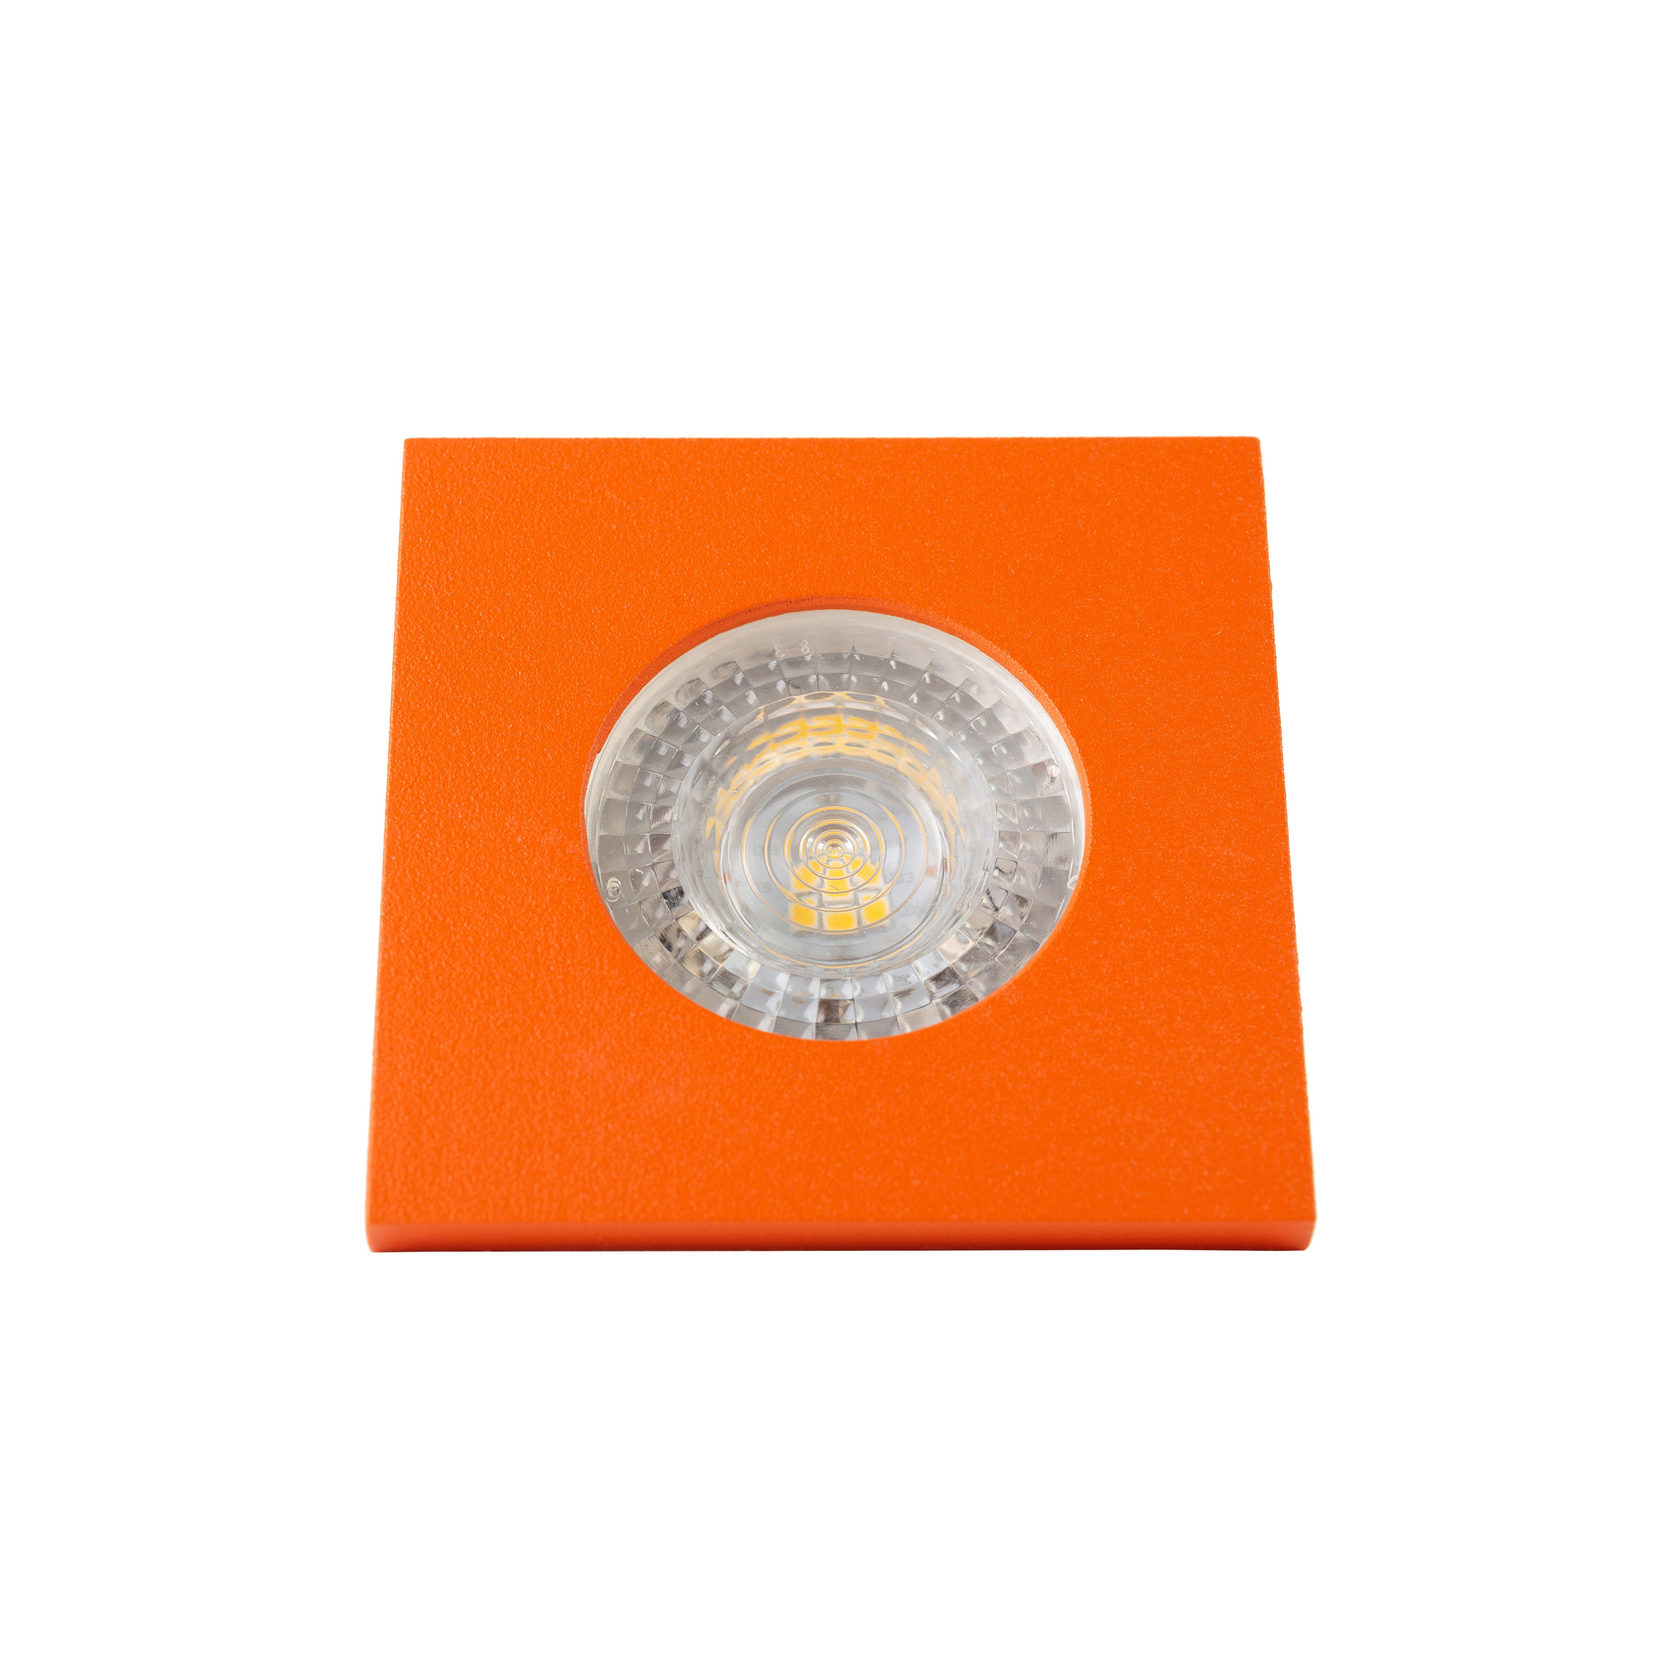 DK2031-OR Встраиваемый светильник, IP 20, 50 Вт, GU10, оранжевый, алюминий